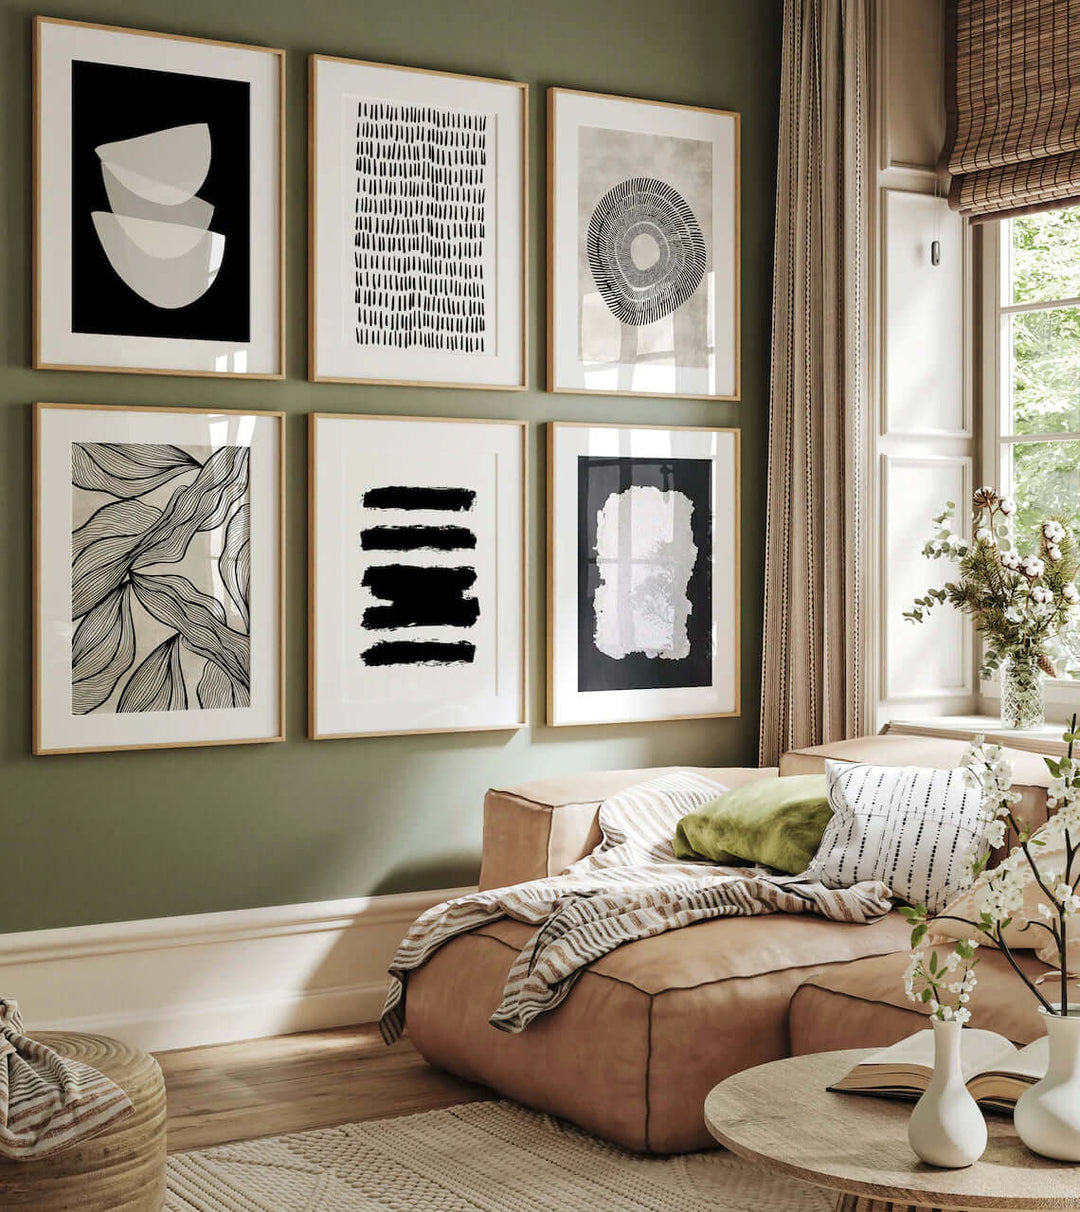 Set de láminas decorativas y cuadros abstractos para decorar las paredes de un salón.